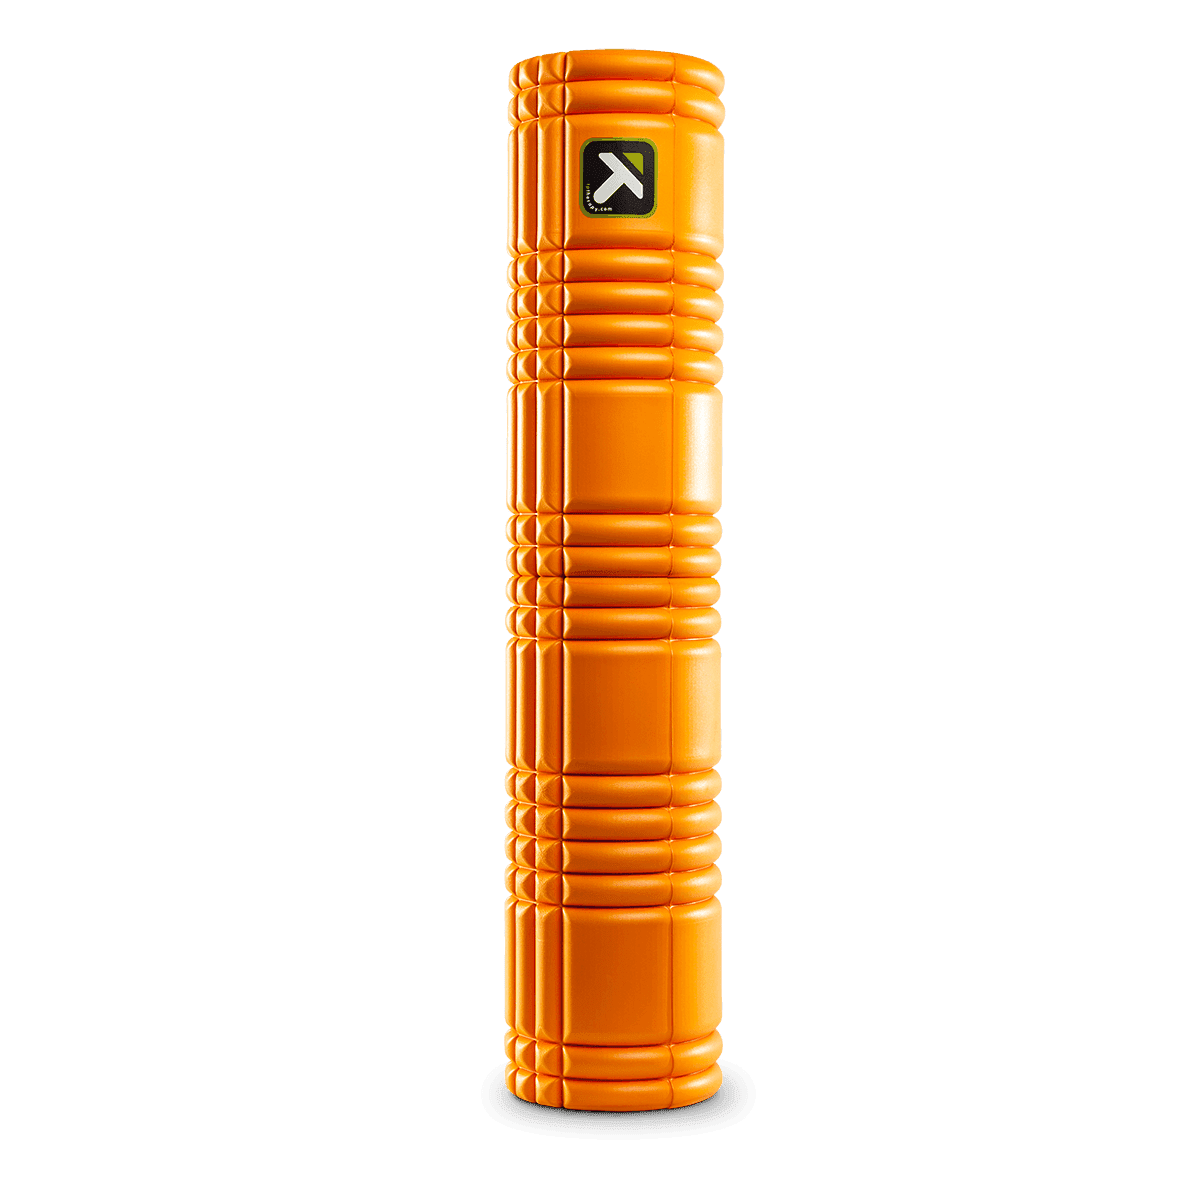 Trigger Point The Grid Foam Roller 65cm Barva: oranžová